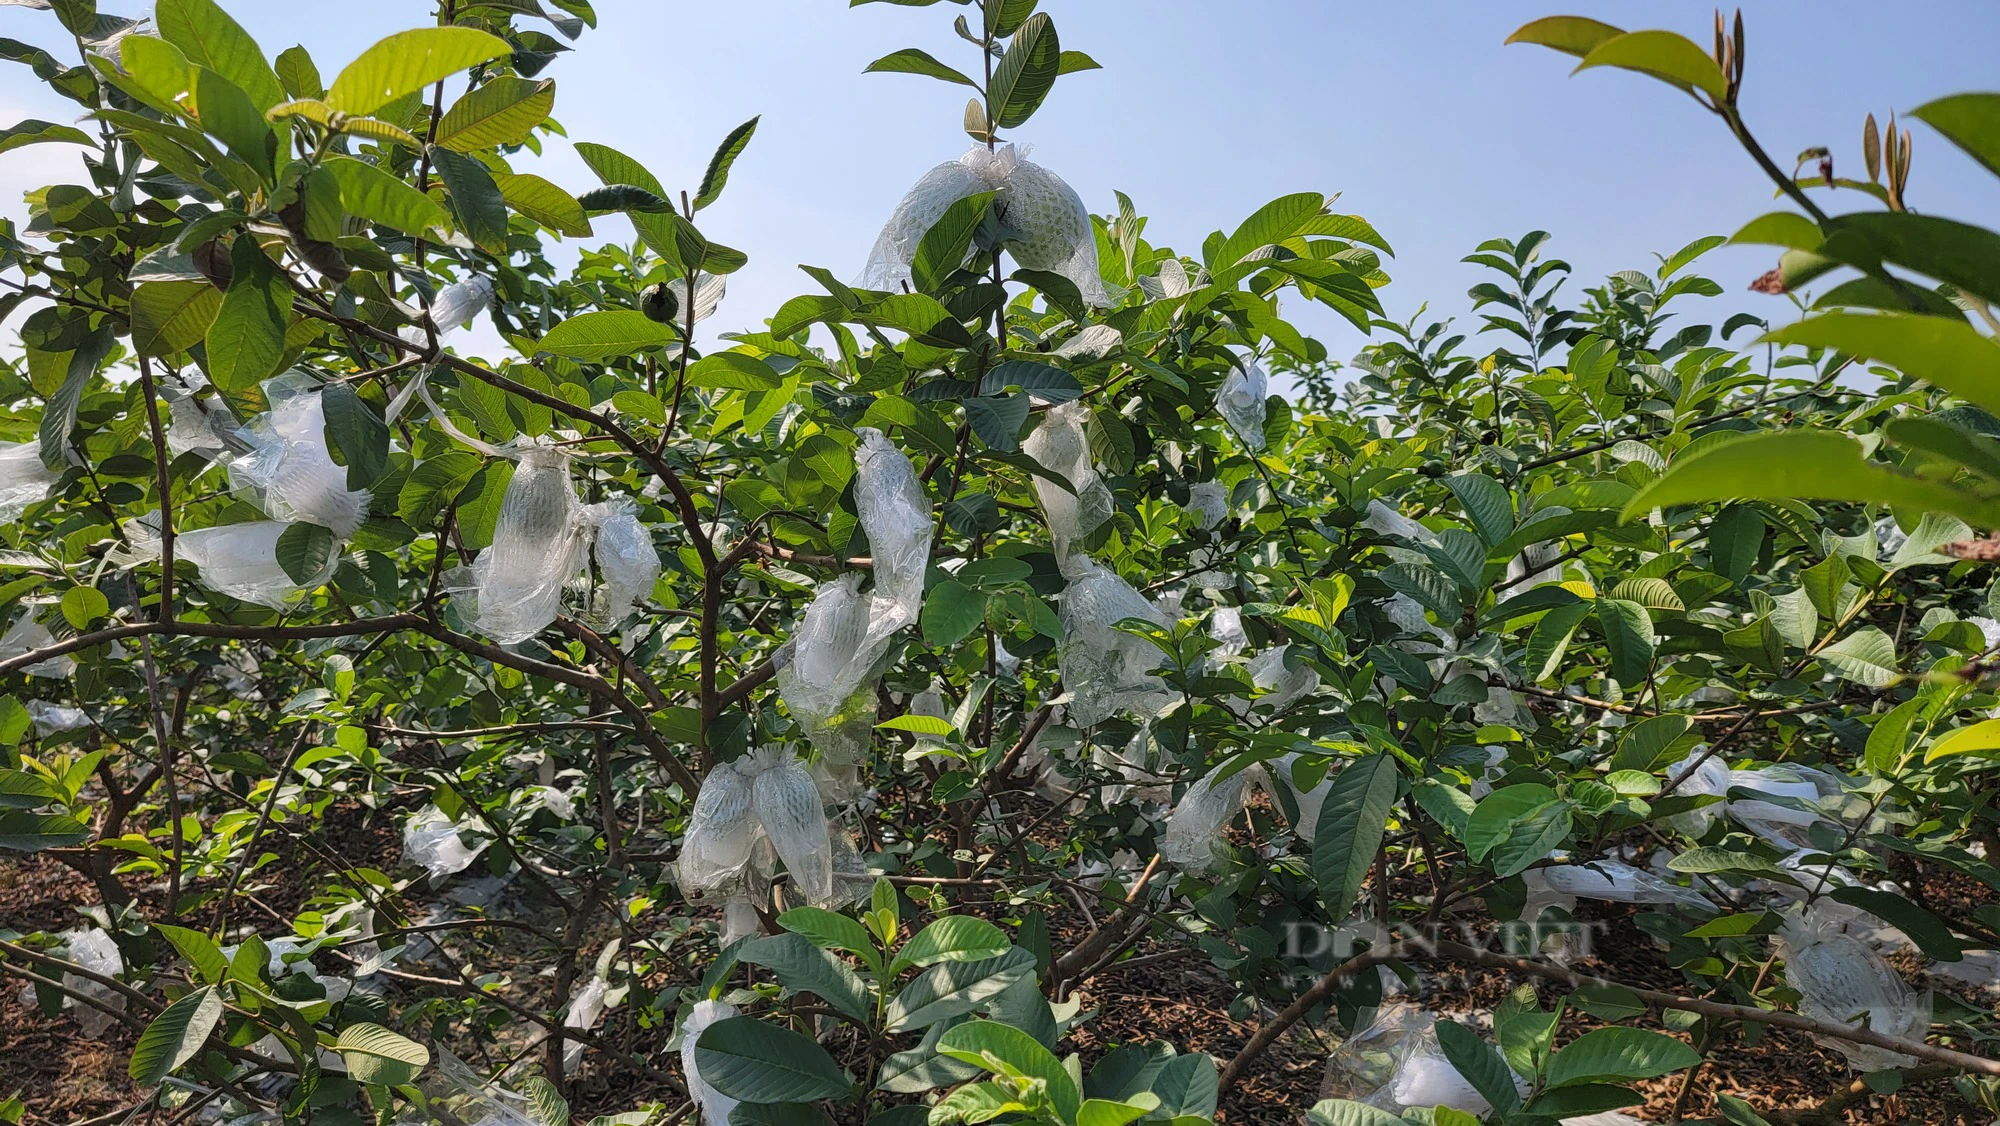 Chuyển đổi sang trồng ổi lê ngọt thơm, nông dân Đồng Cẩm ở Hải Dương vừa đỡ vất vả lại thu nhập cao - Ảnh 5.